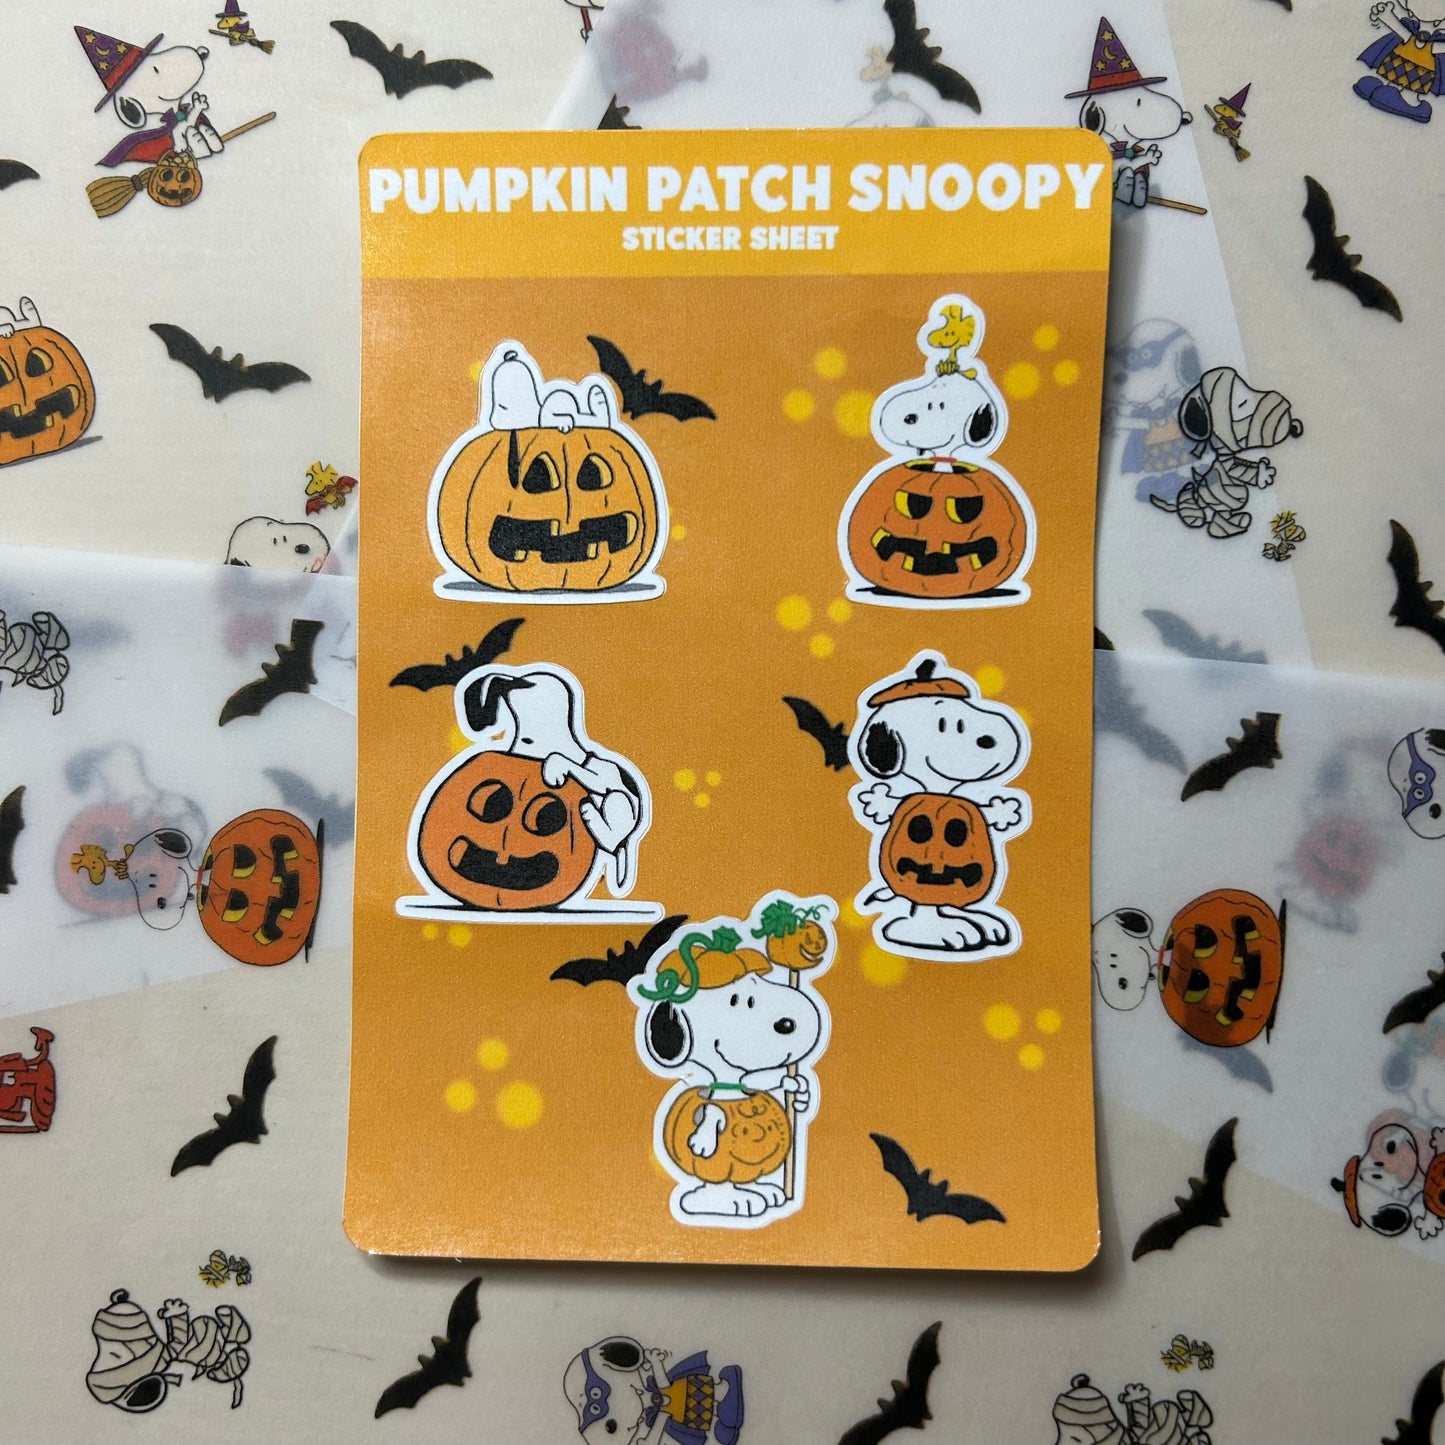 Pumpkin Patch Snoopy Sticker Sheet